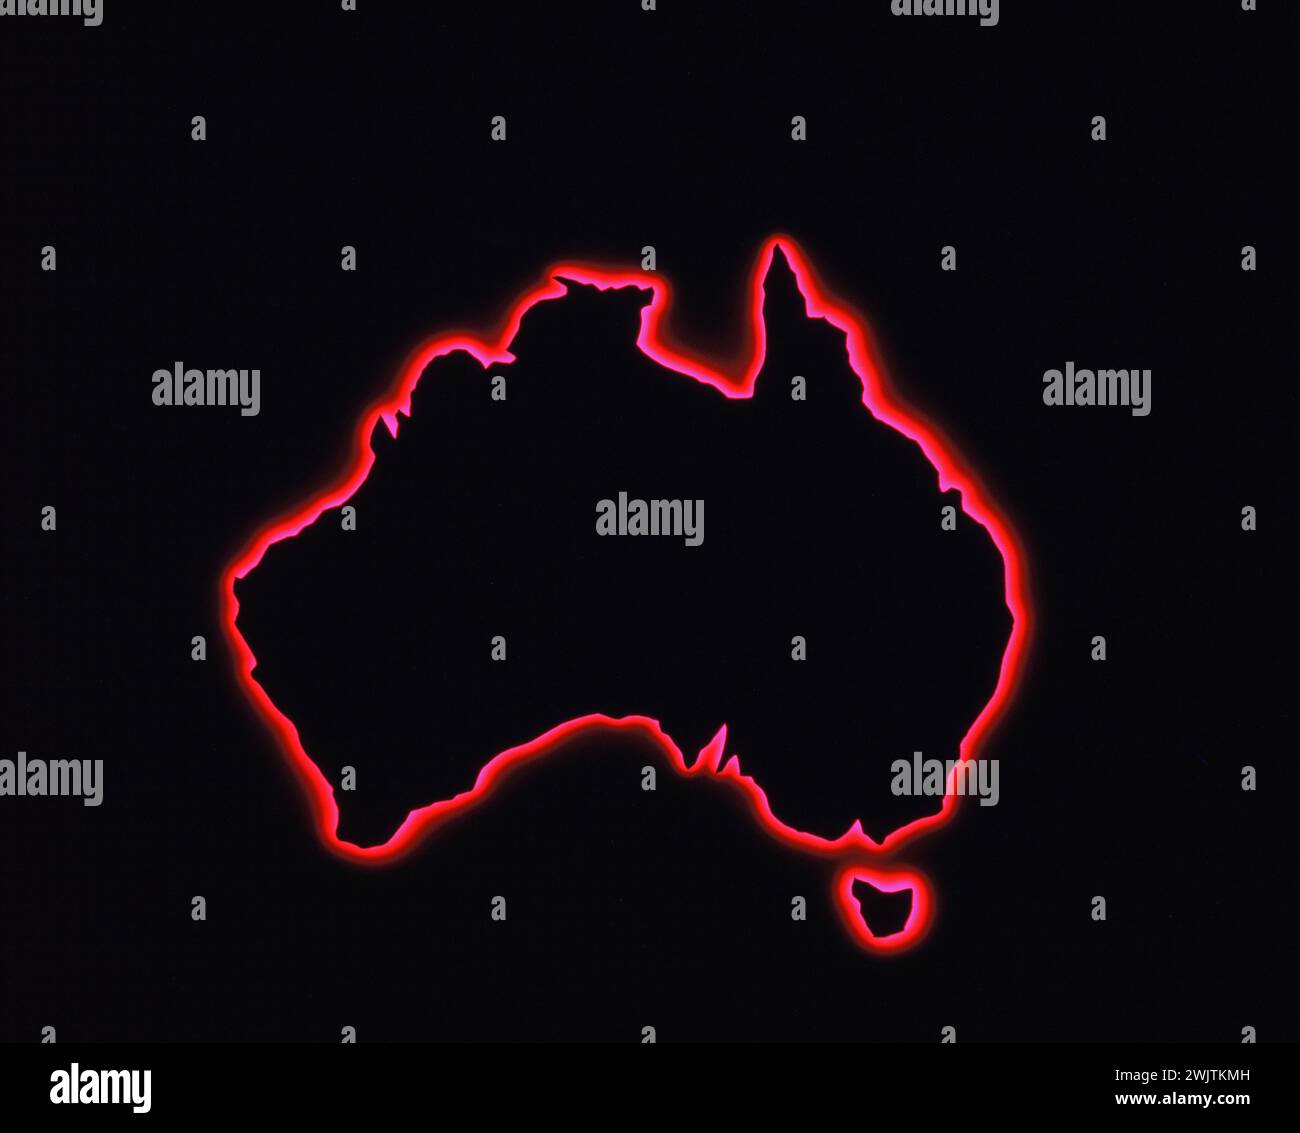 Bildmaterial. Umrisskarte von Australien. Stockfoto